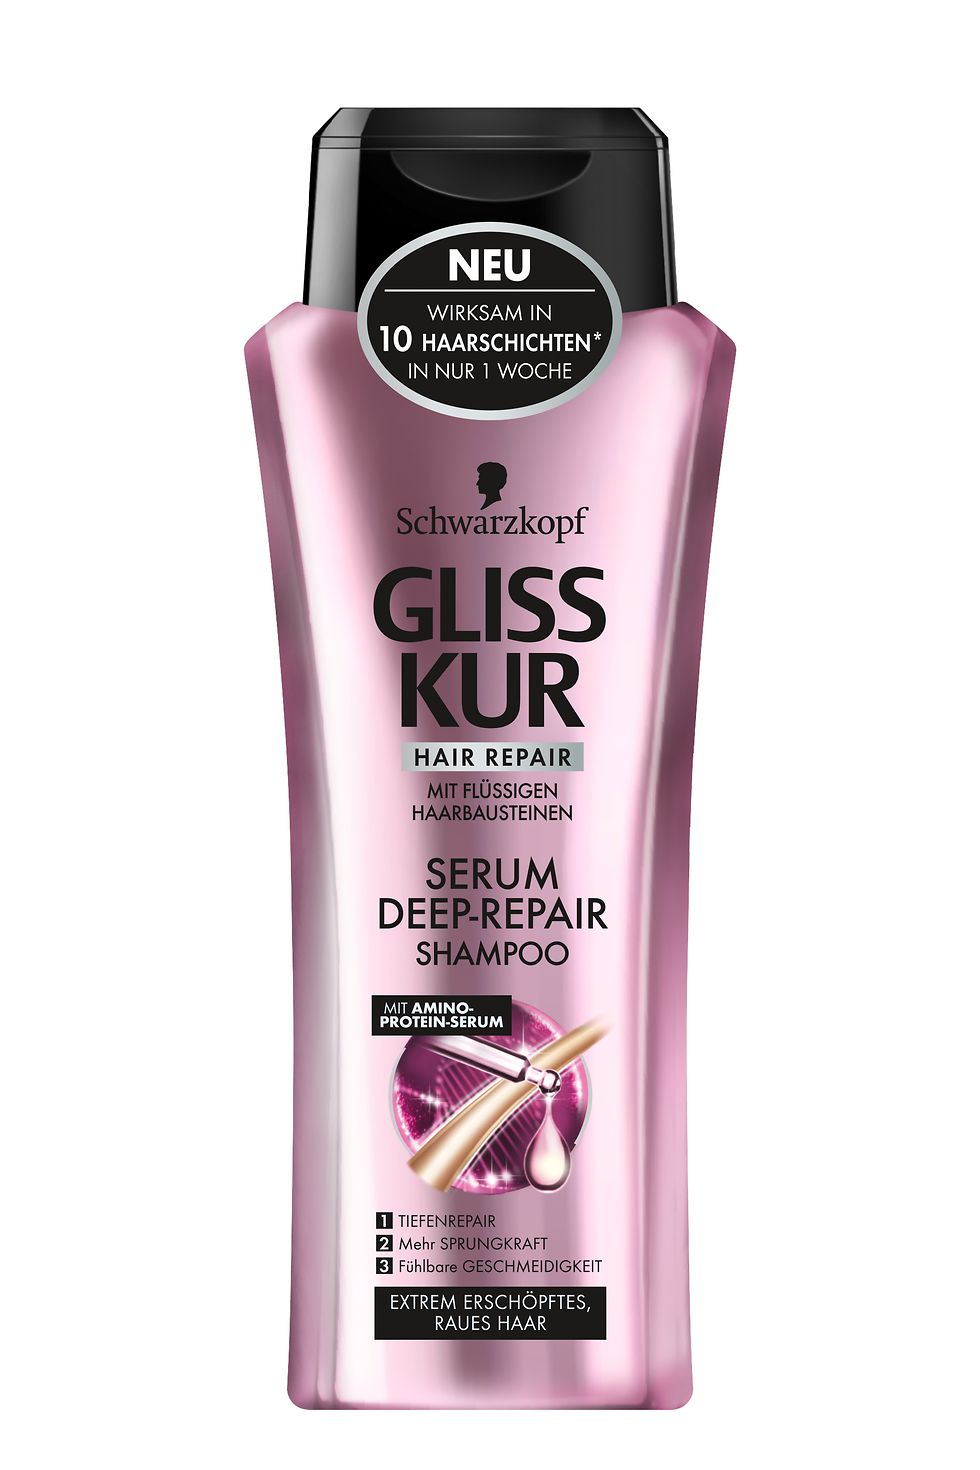 Gliss Kur Serum Deep-Repair Shampoo